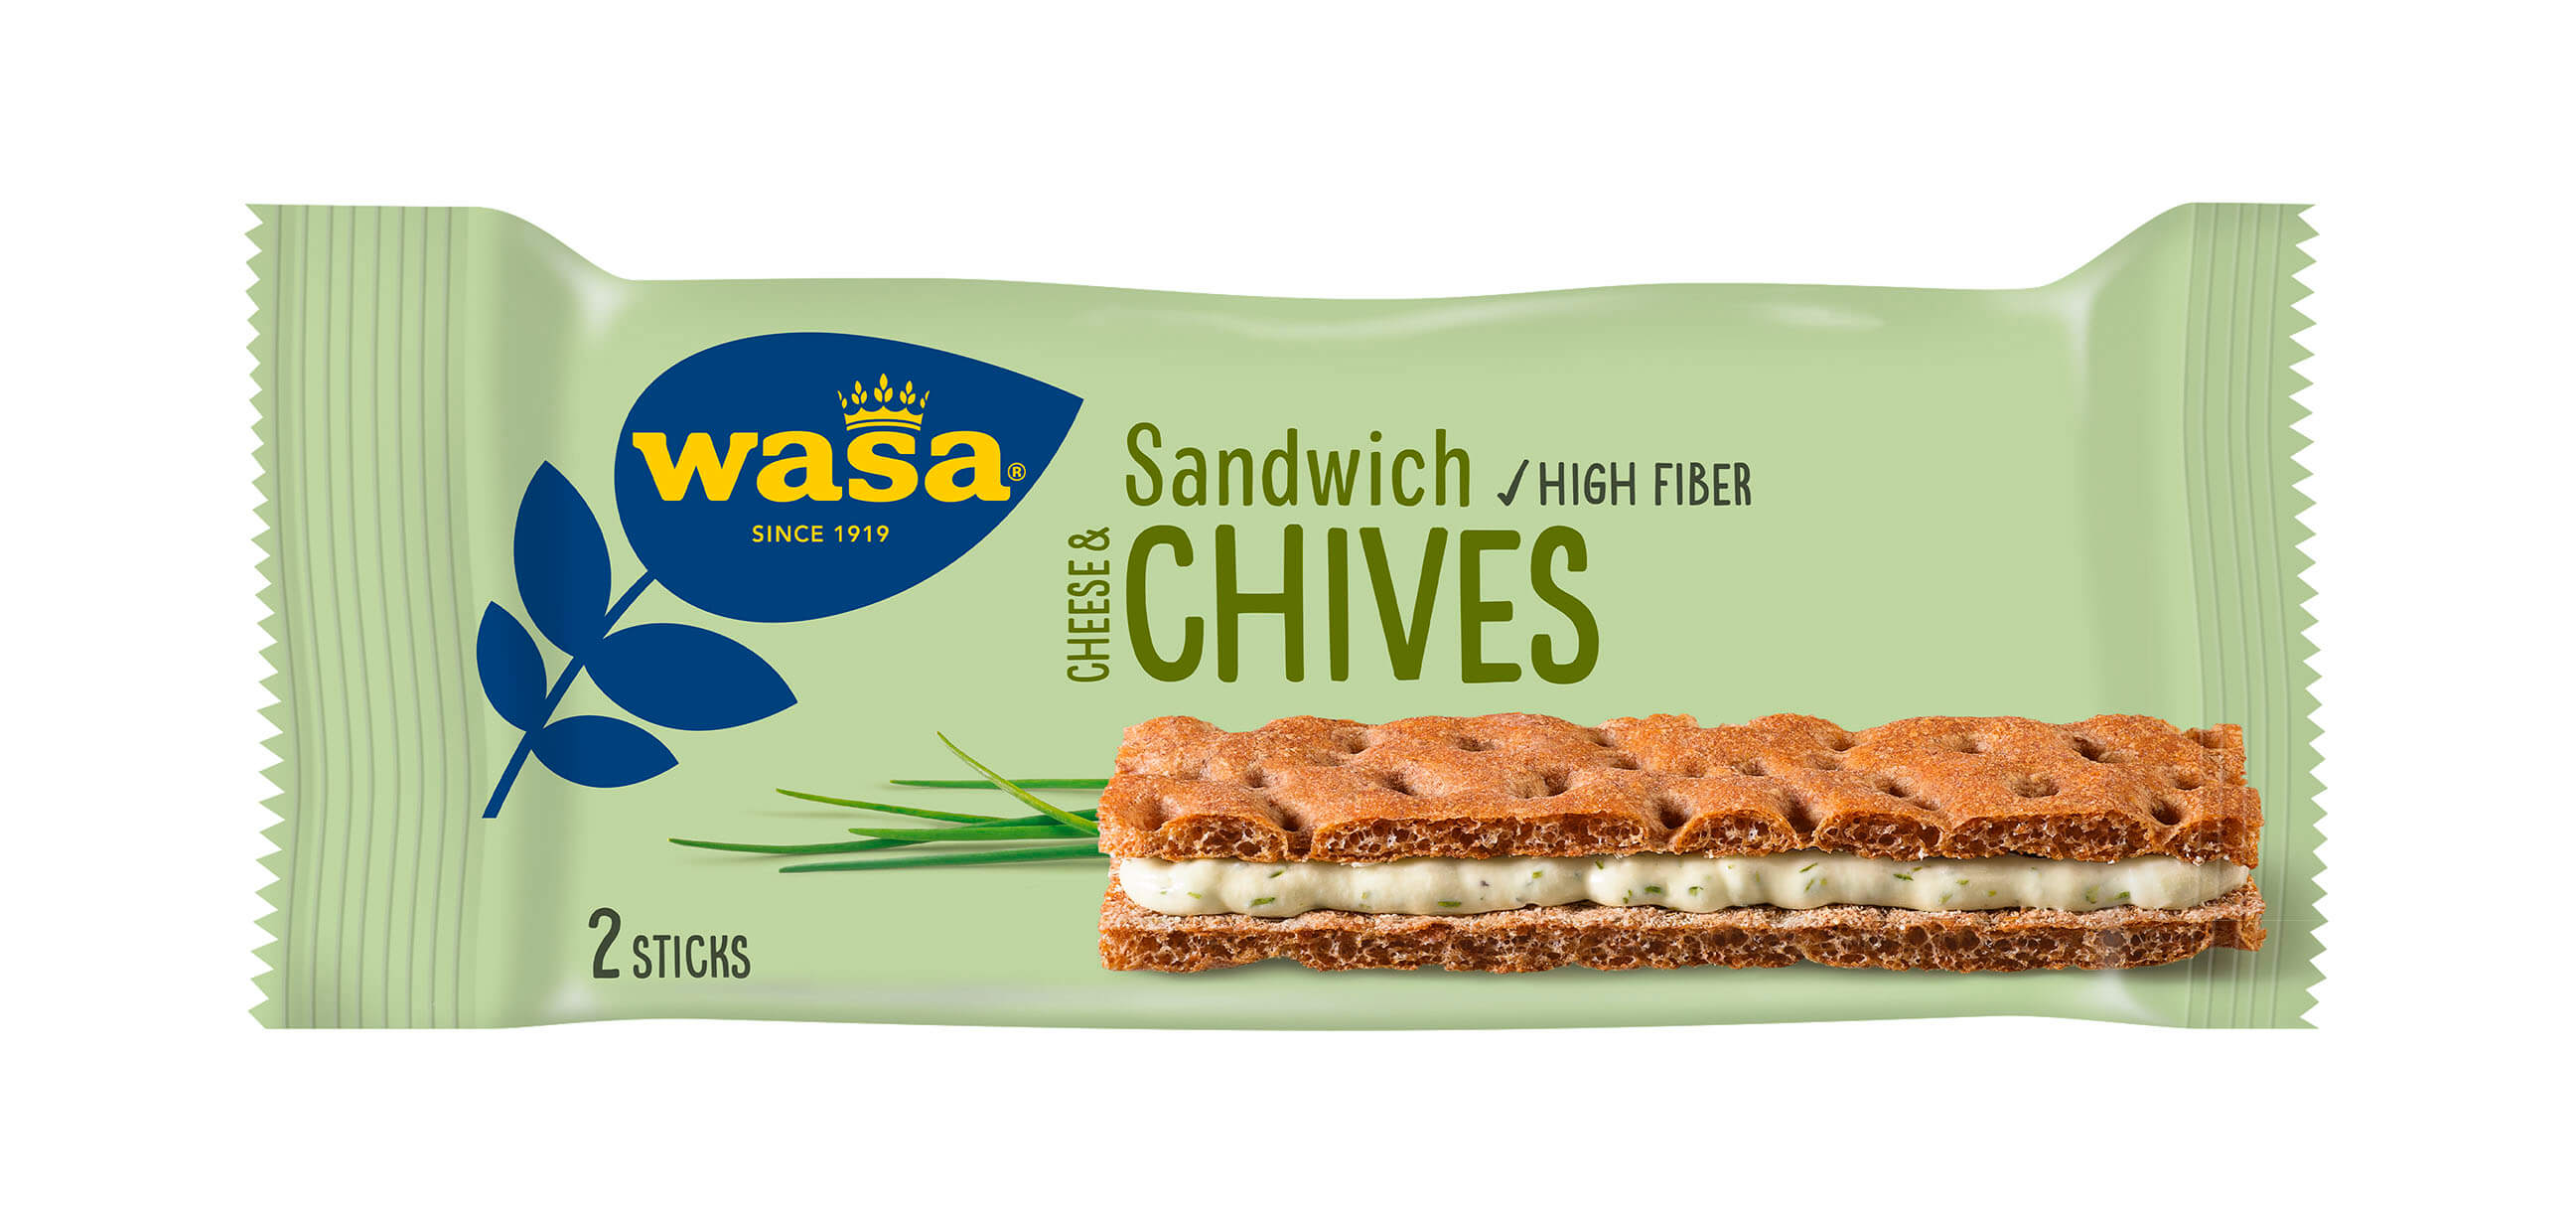 Wasa Sandwich Cheese & Chives - Upptäck det perfekta mellanmålet, knäckebröd med krämig ostfyllning. Utmärkt som enkelt mellanmål när du är på språng. Enkla mellanmål efter skolan eller hemma.